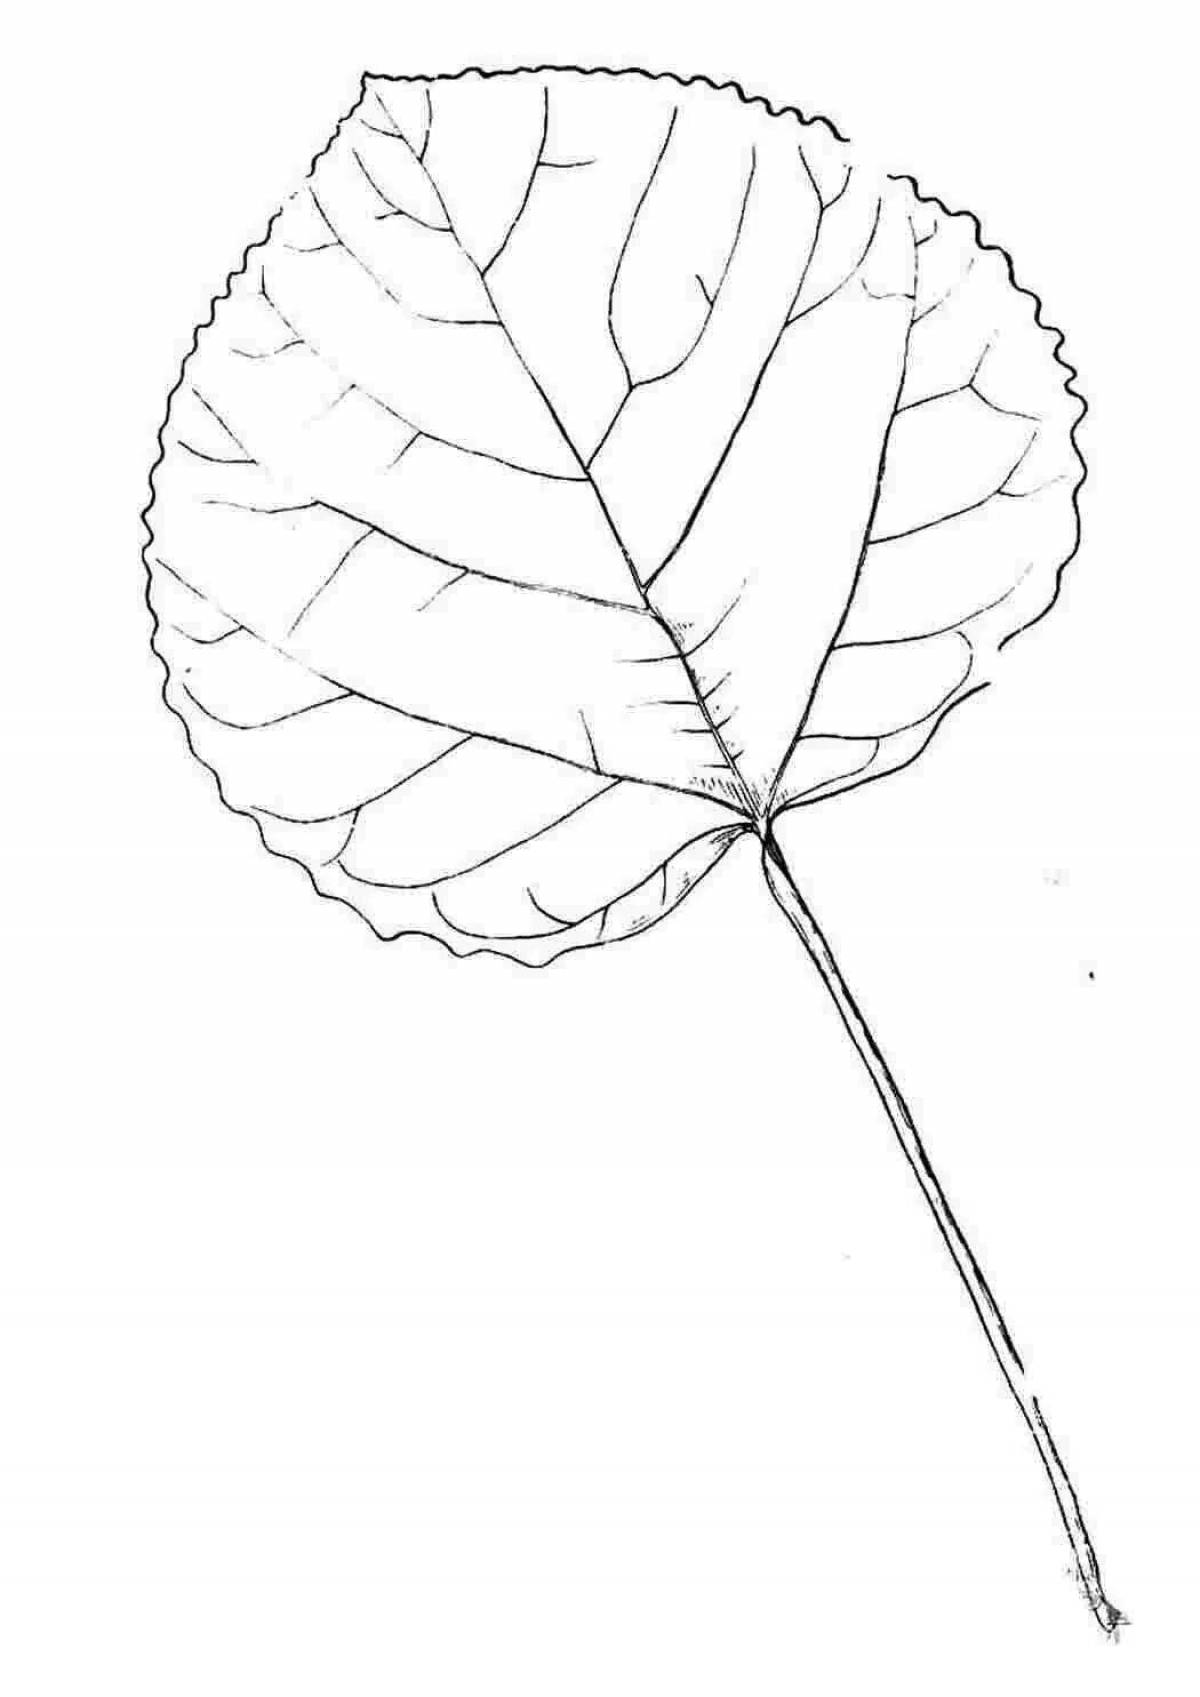 Лист осины рисунок